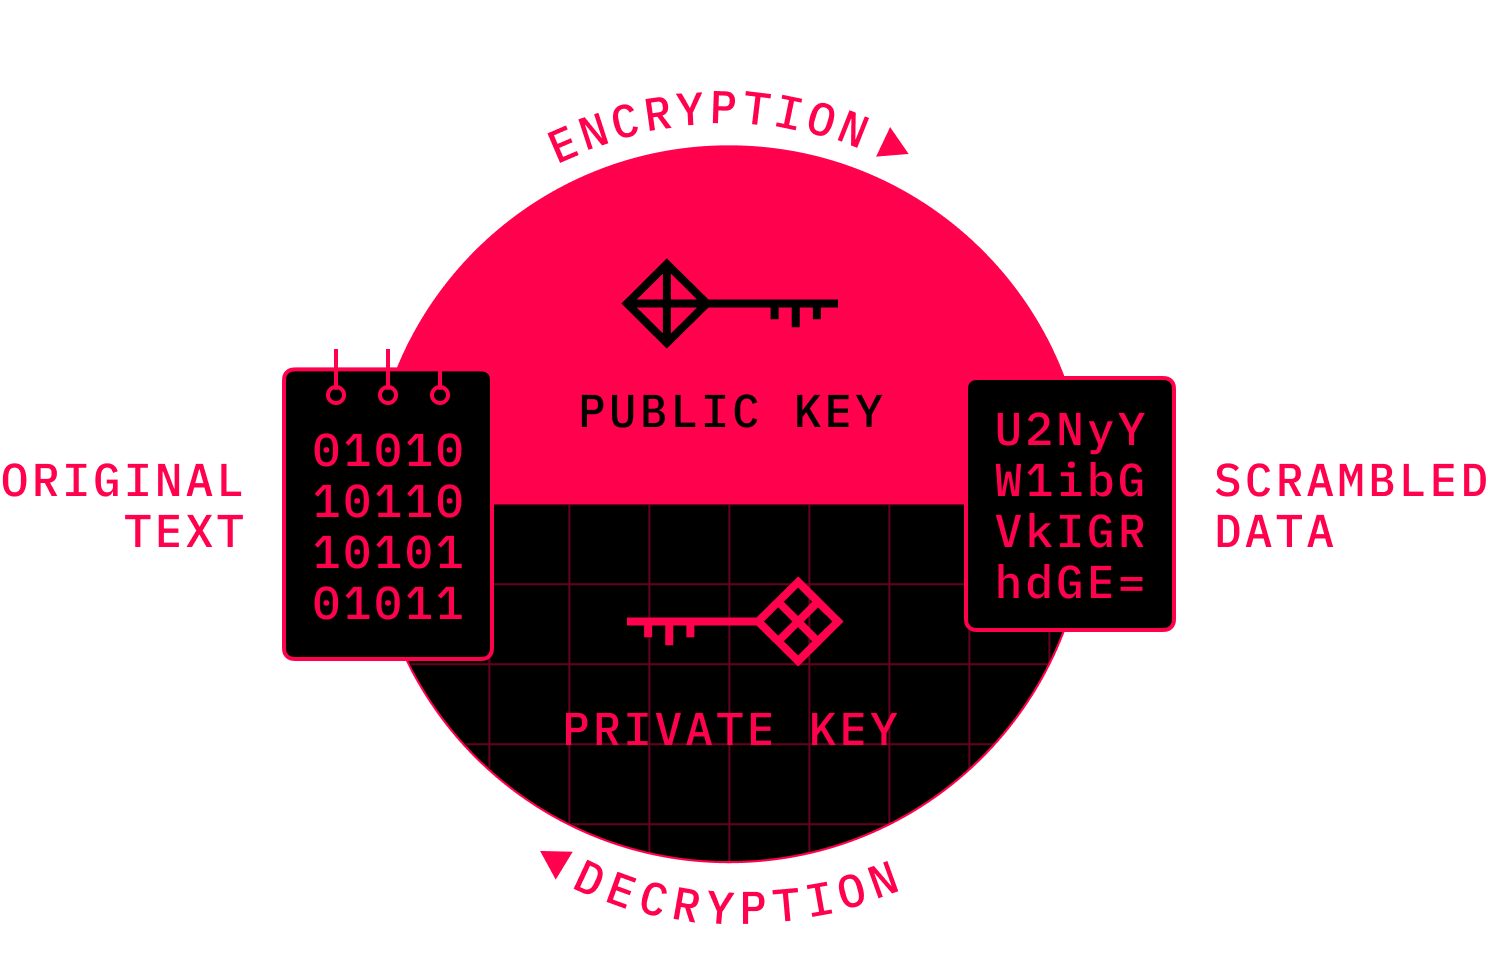 Asymmetric Encryption